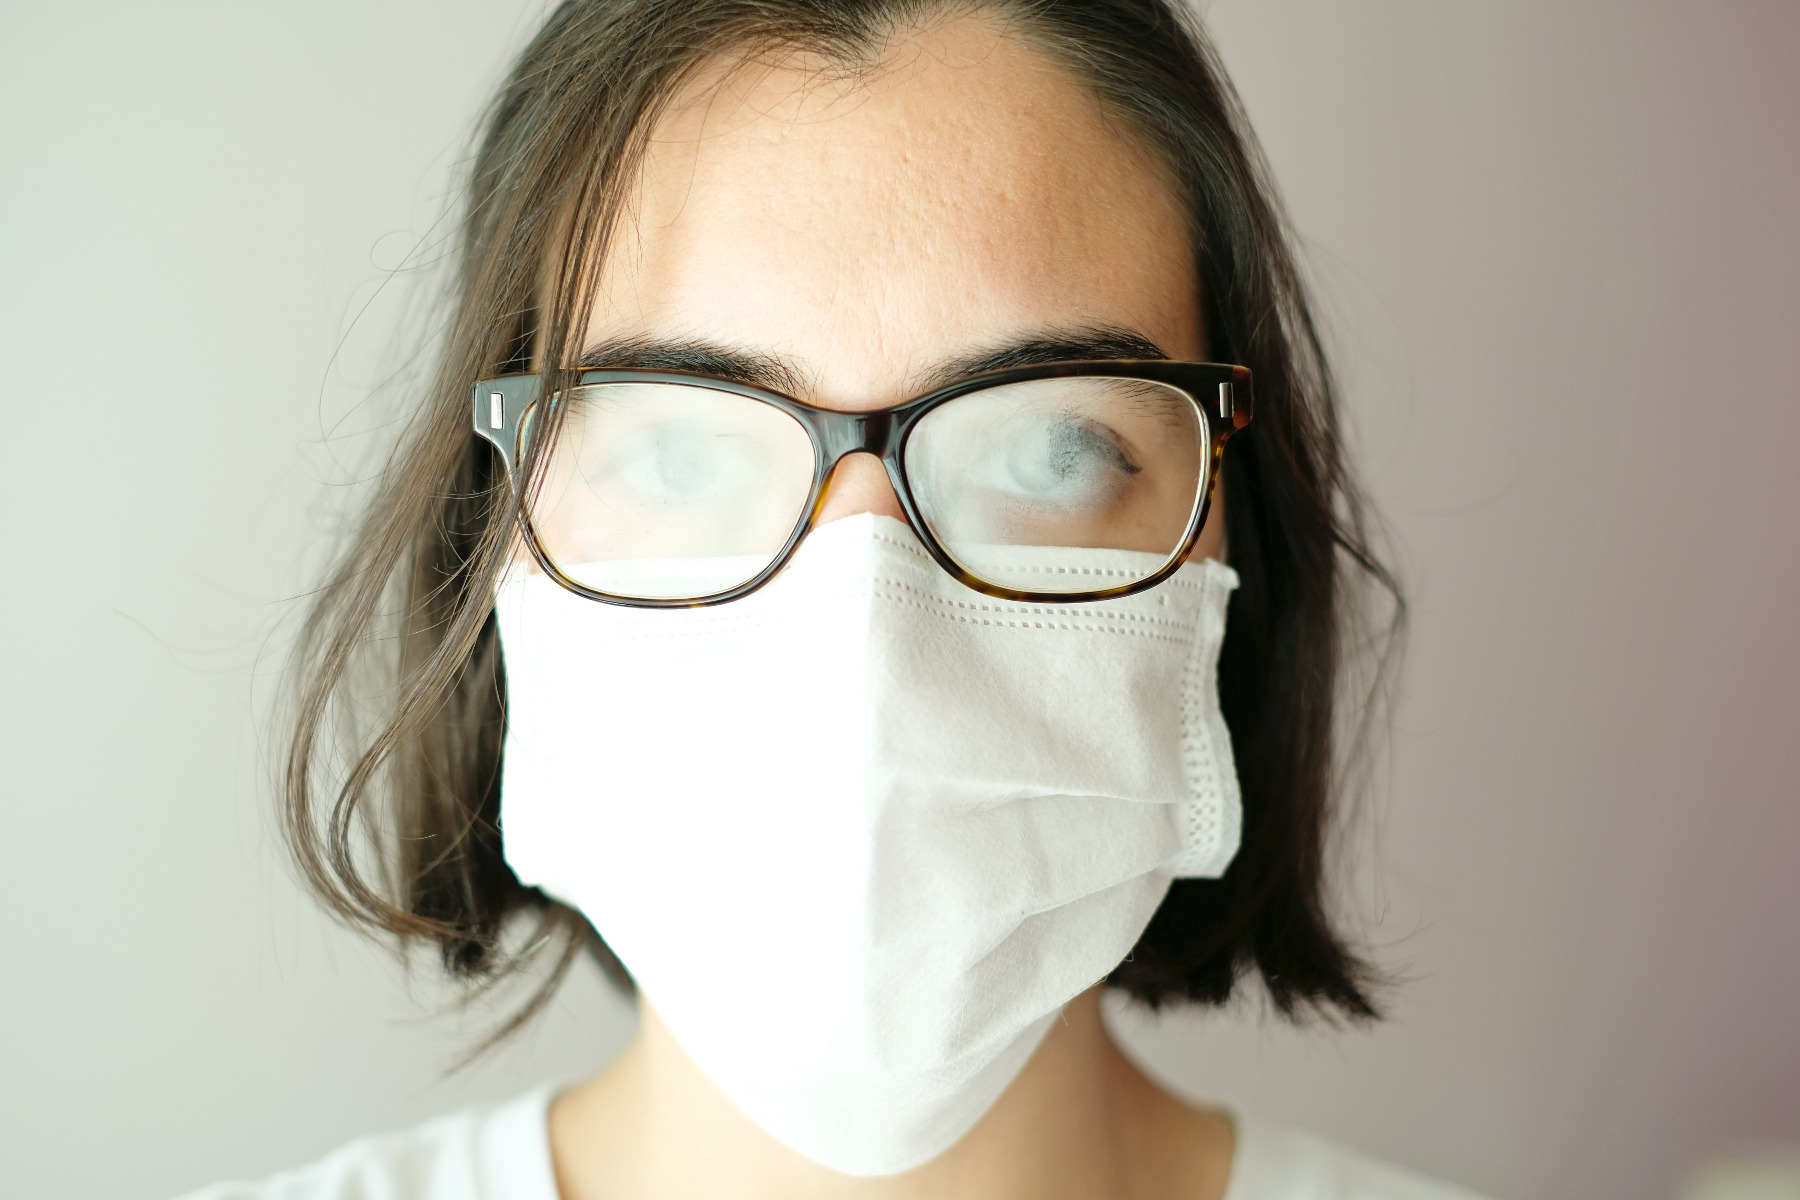 Masque de protection : comment éviter la buée sur les lunettes ?